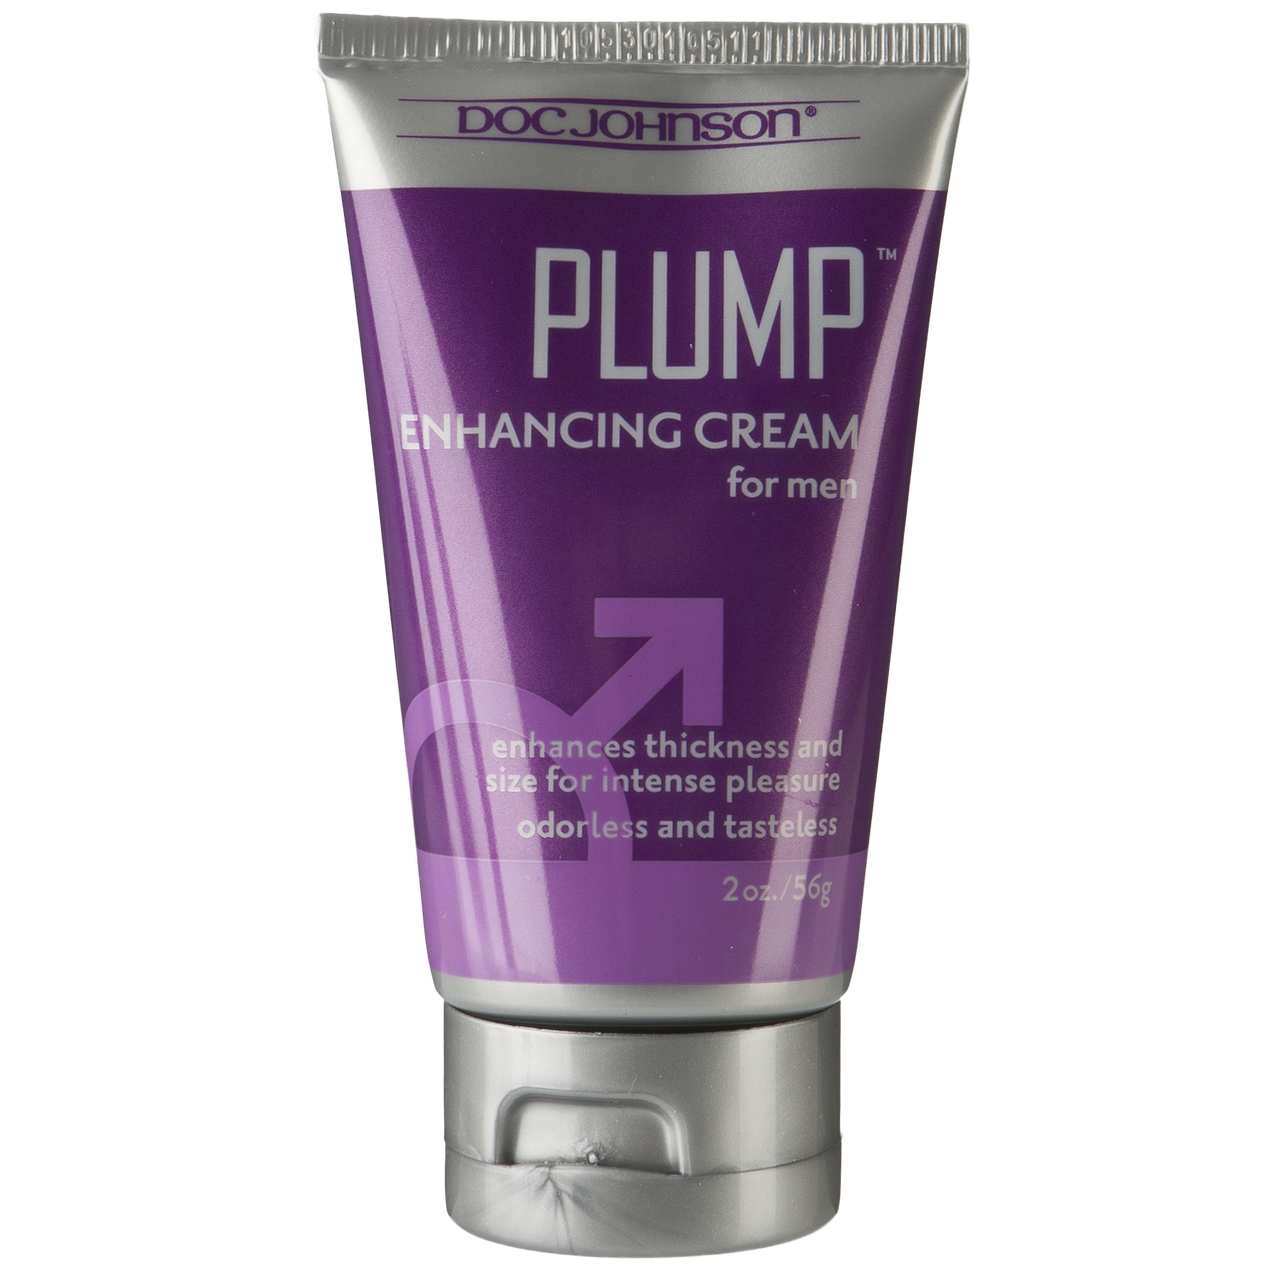 Крем для збільшення члена Doc Johnson Plump — Enhancing Cream For Men (56 гр)